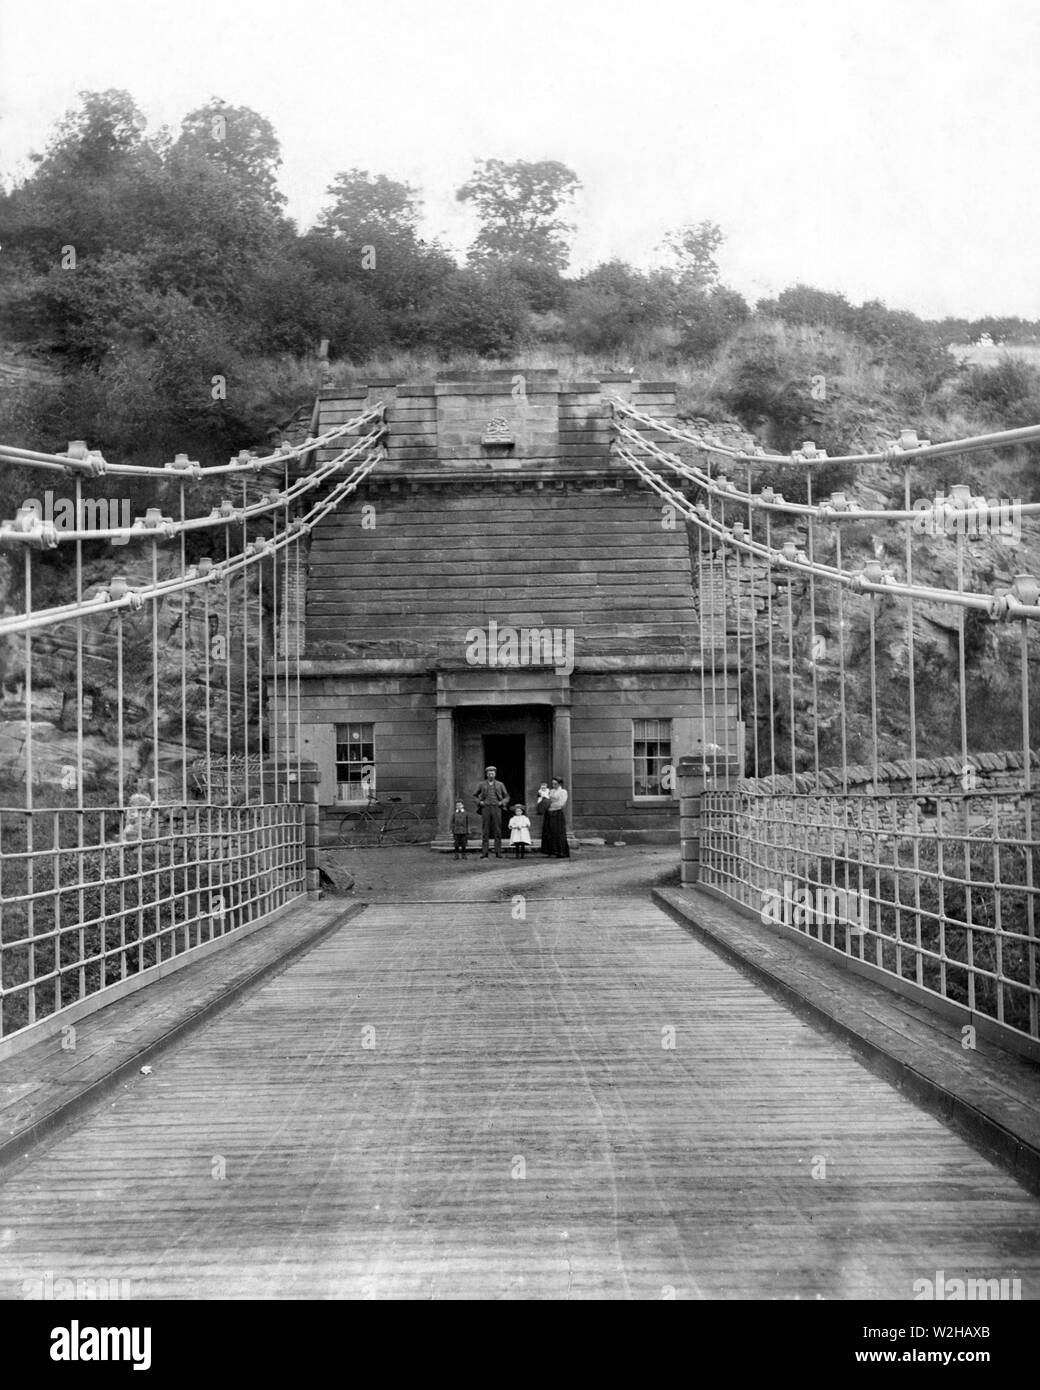 L'Unione Chain Bridge e casa di pedaggio sul lato italiano del ponte. La fotografia è stata scattata a circa 1899/1900 e con la famiglia Roxburgh al di fuori della loro casa. Casa del pedaggio è stata demolita negli anni cinquanta. Il ponte ancora trasporta traffico veicolare ed è il più antico ponte di sospensione in tutto il mondo continuano a farlo. Attraversando il fiume Tweed che collegano l'Inghilterra e la Scozia. Il ponte è nei pressi del villaggio di Berwick upon Tweed ed è stato progettato dal capitano Samuel Brown RN. Foto Stock